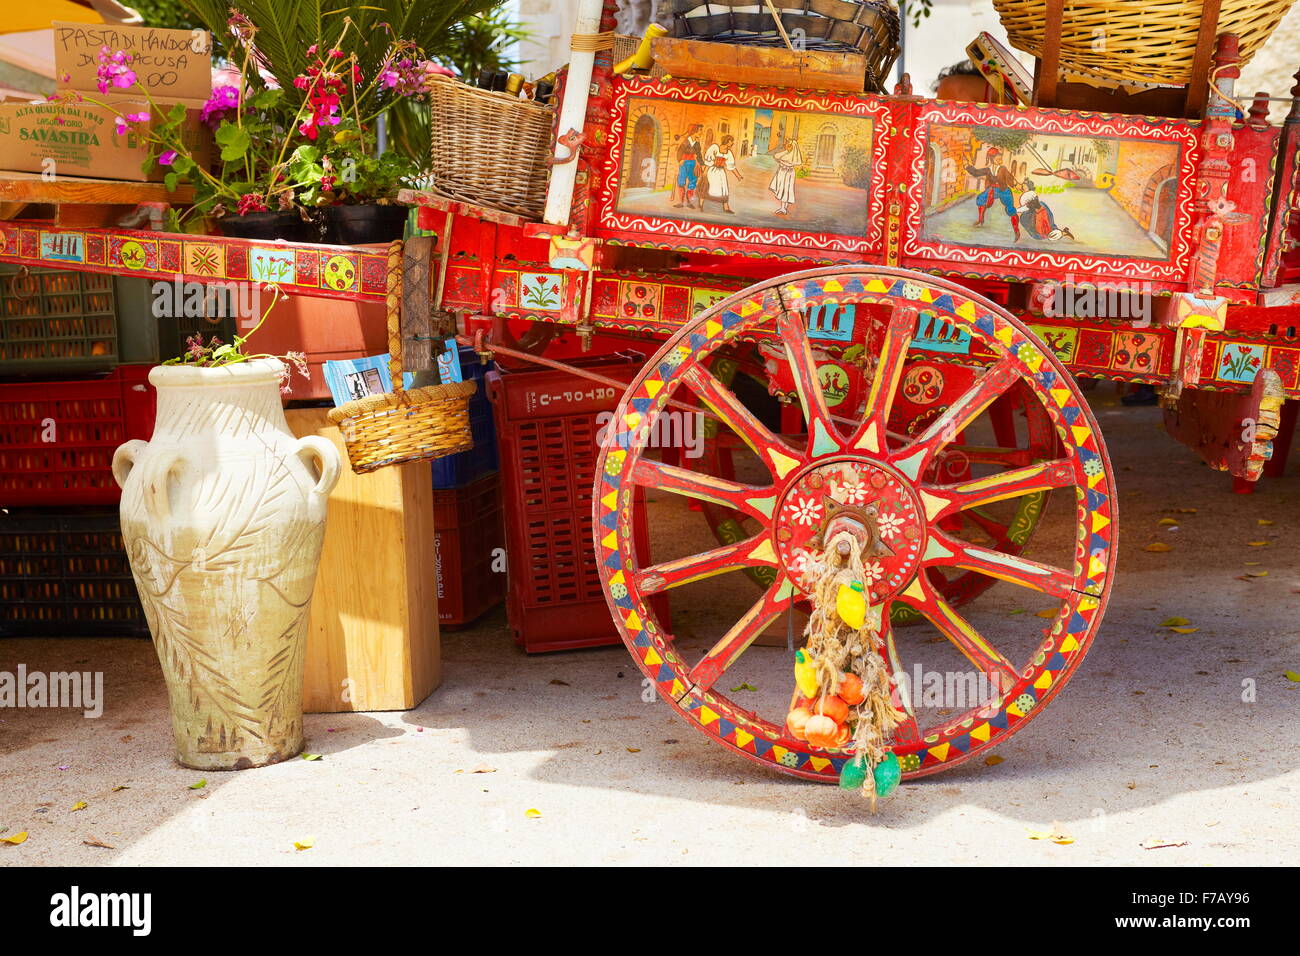 Coloré décoré panier rural sicilien traditionnel, calèche, décoration de la rue, l'île de Sicile, Italie Banque D'Images